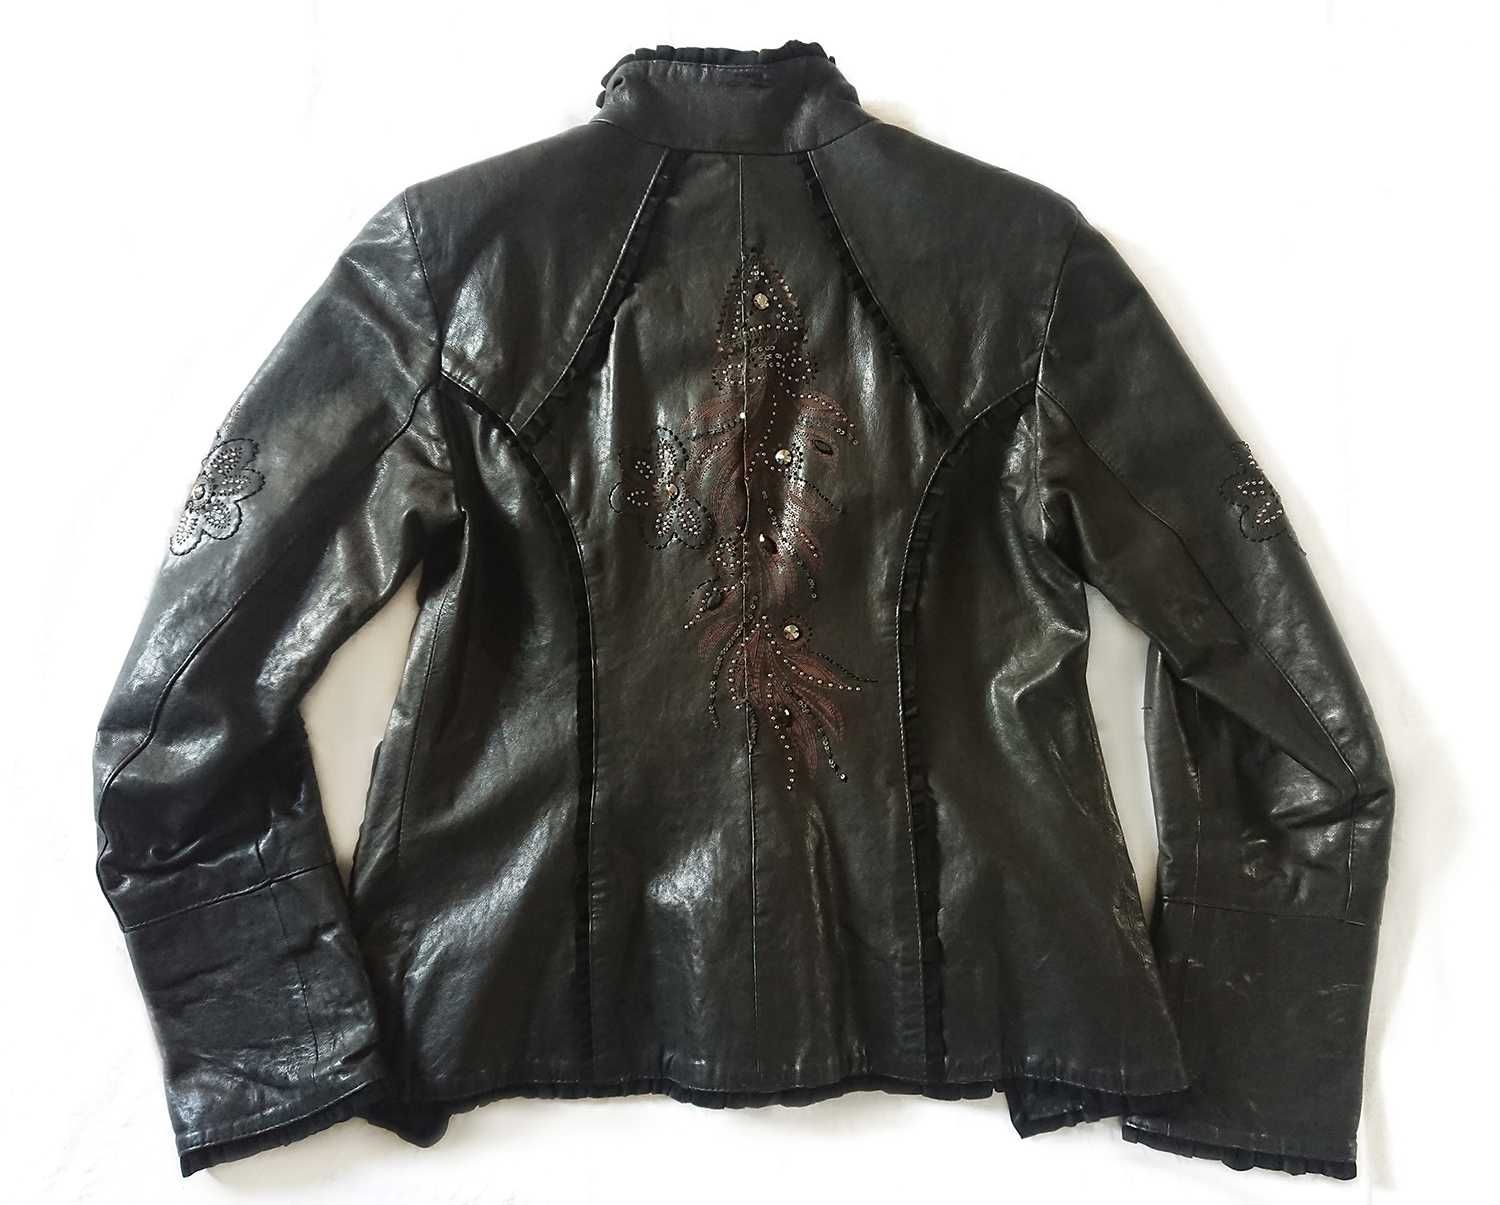 Czarna kurtka skórzana, wyszywana, z Turcji. Rozmiar XL.